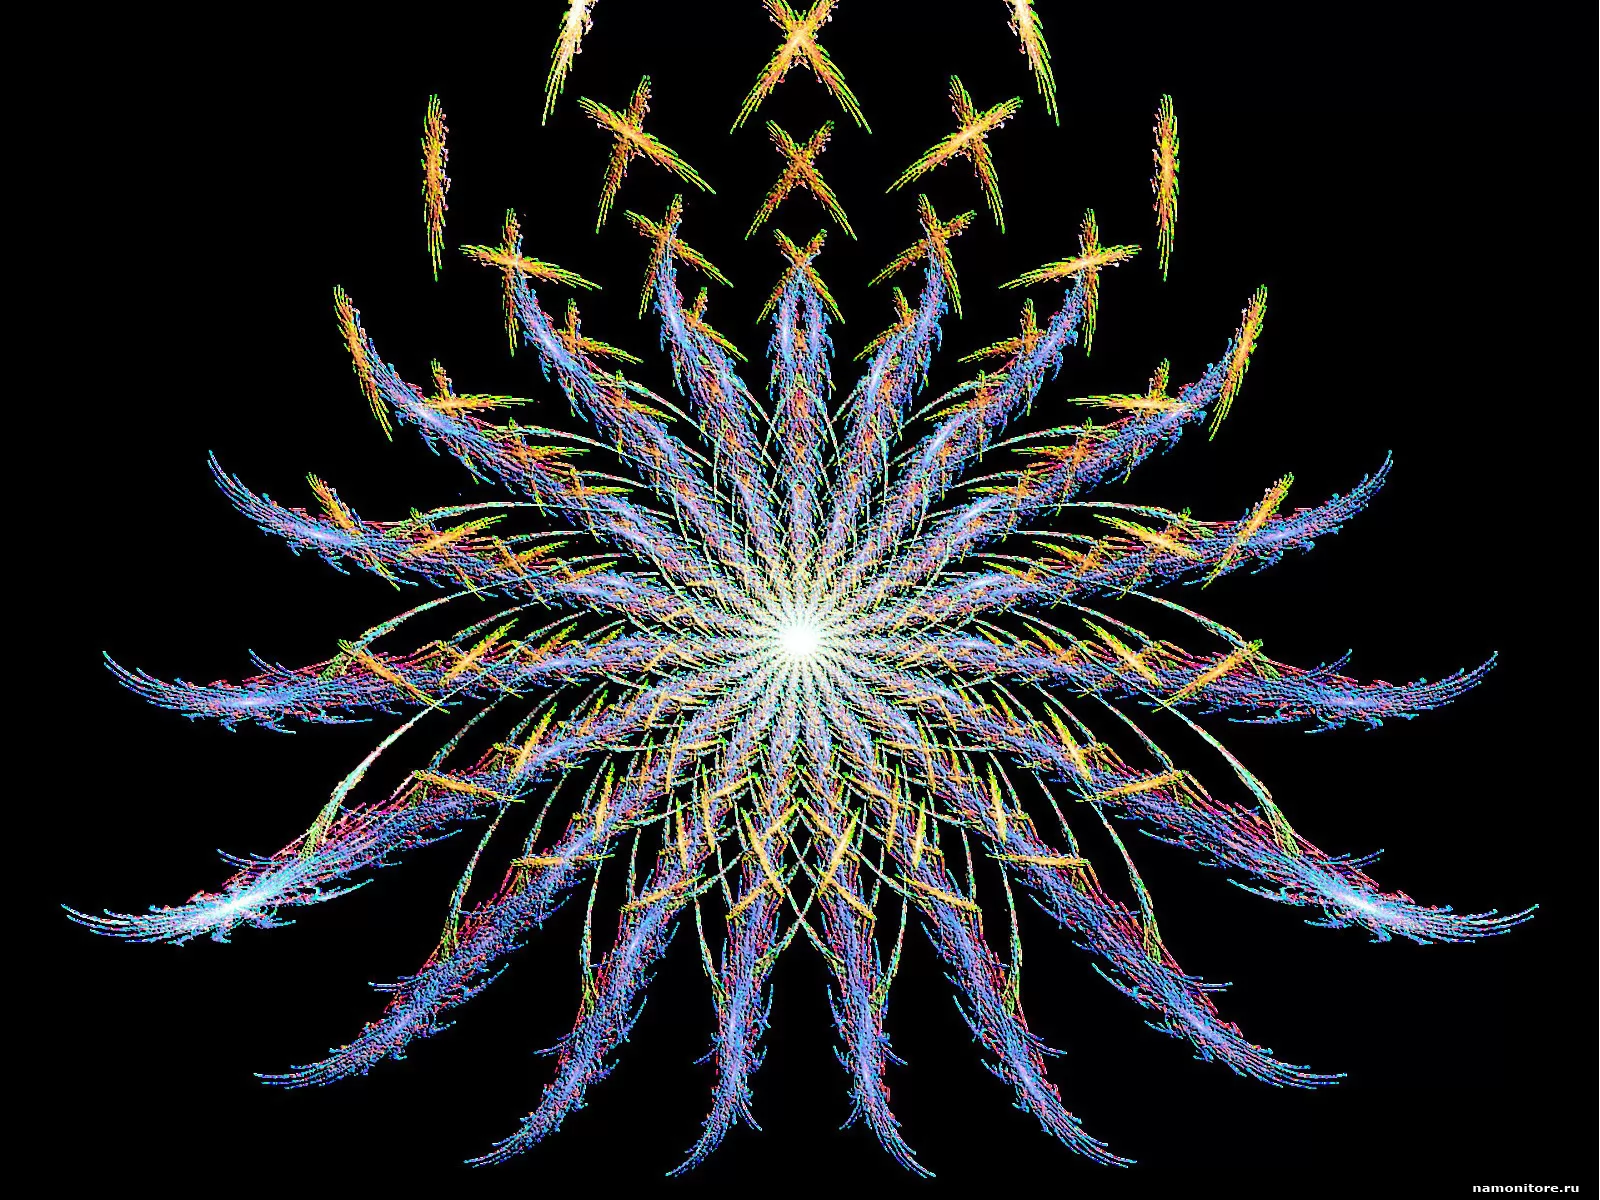 Cosmic Flower or Firework, ,  